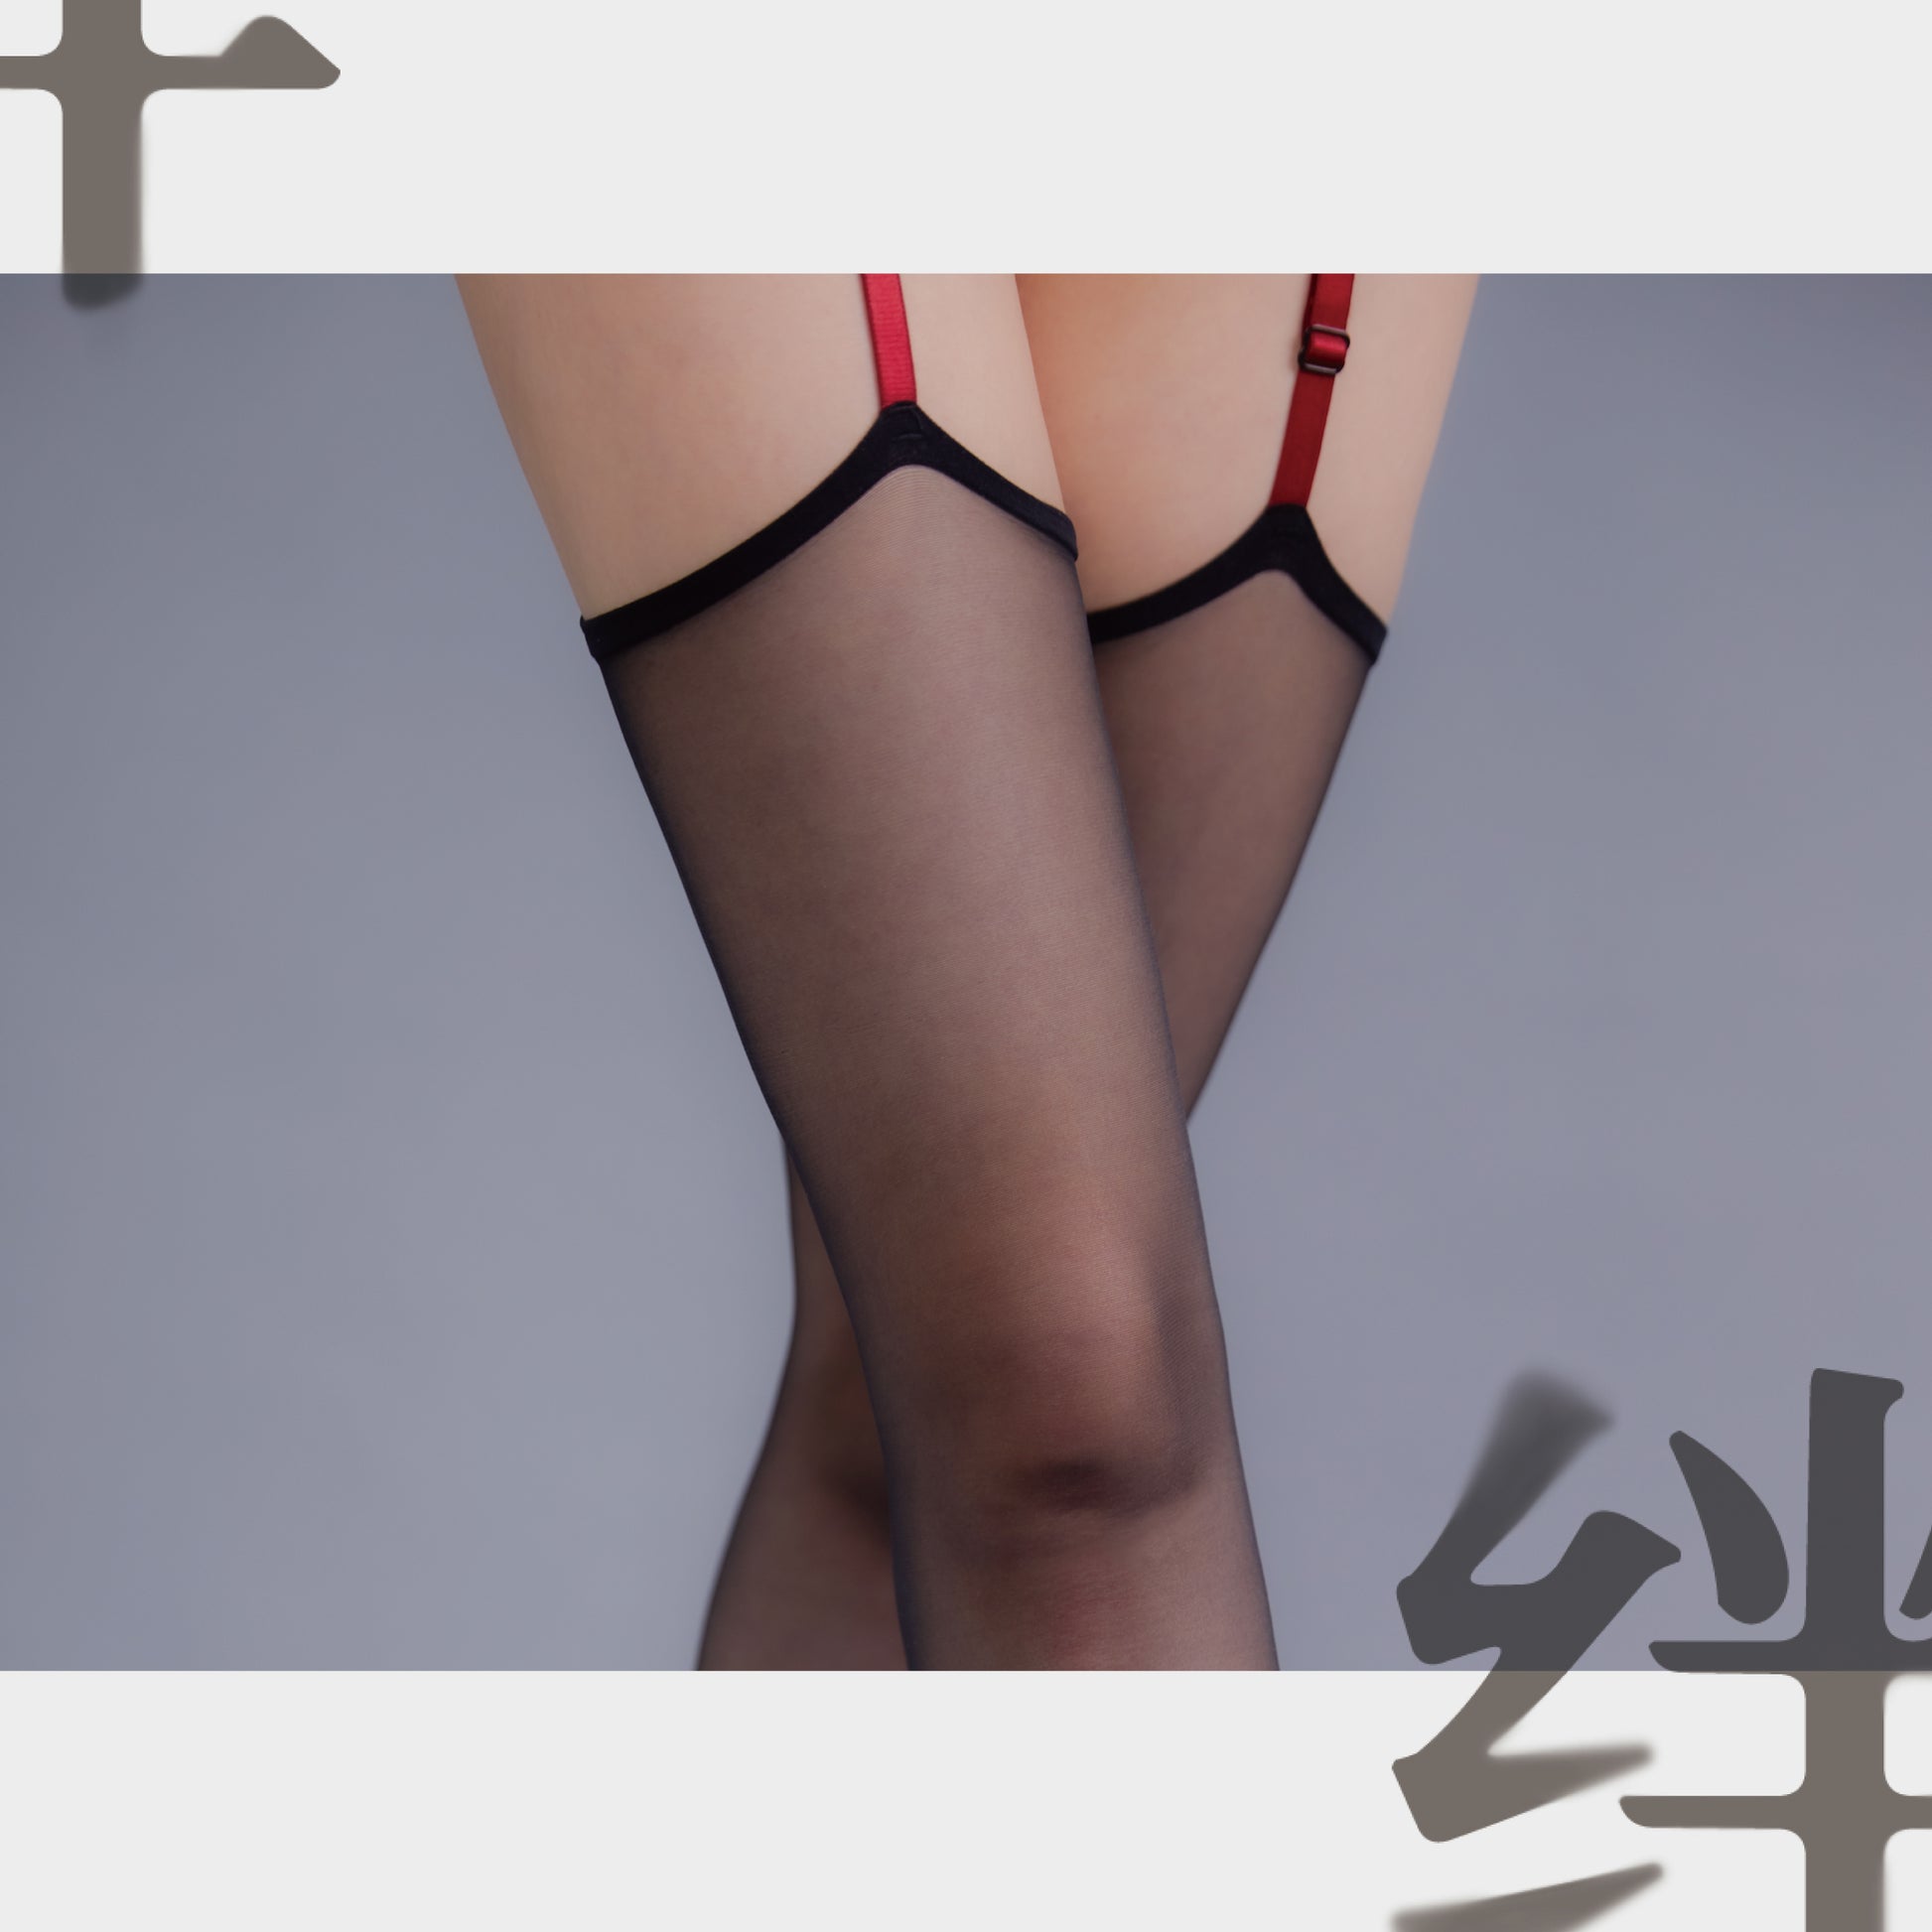 「绫」【绊】禁忌绑带 3D撞色绑带性感腿环吊带丝袜-9Rabbit北美情趣用品